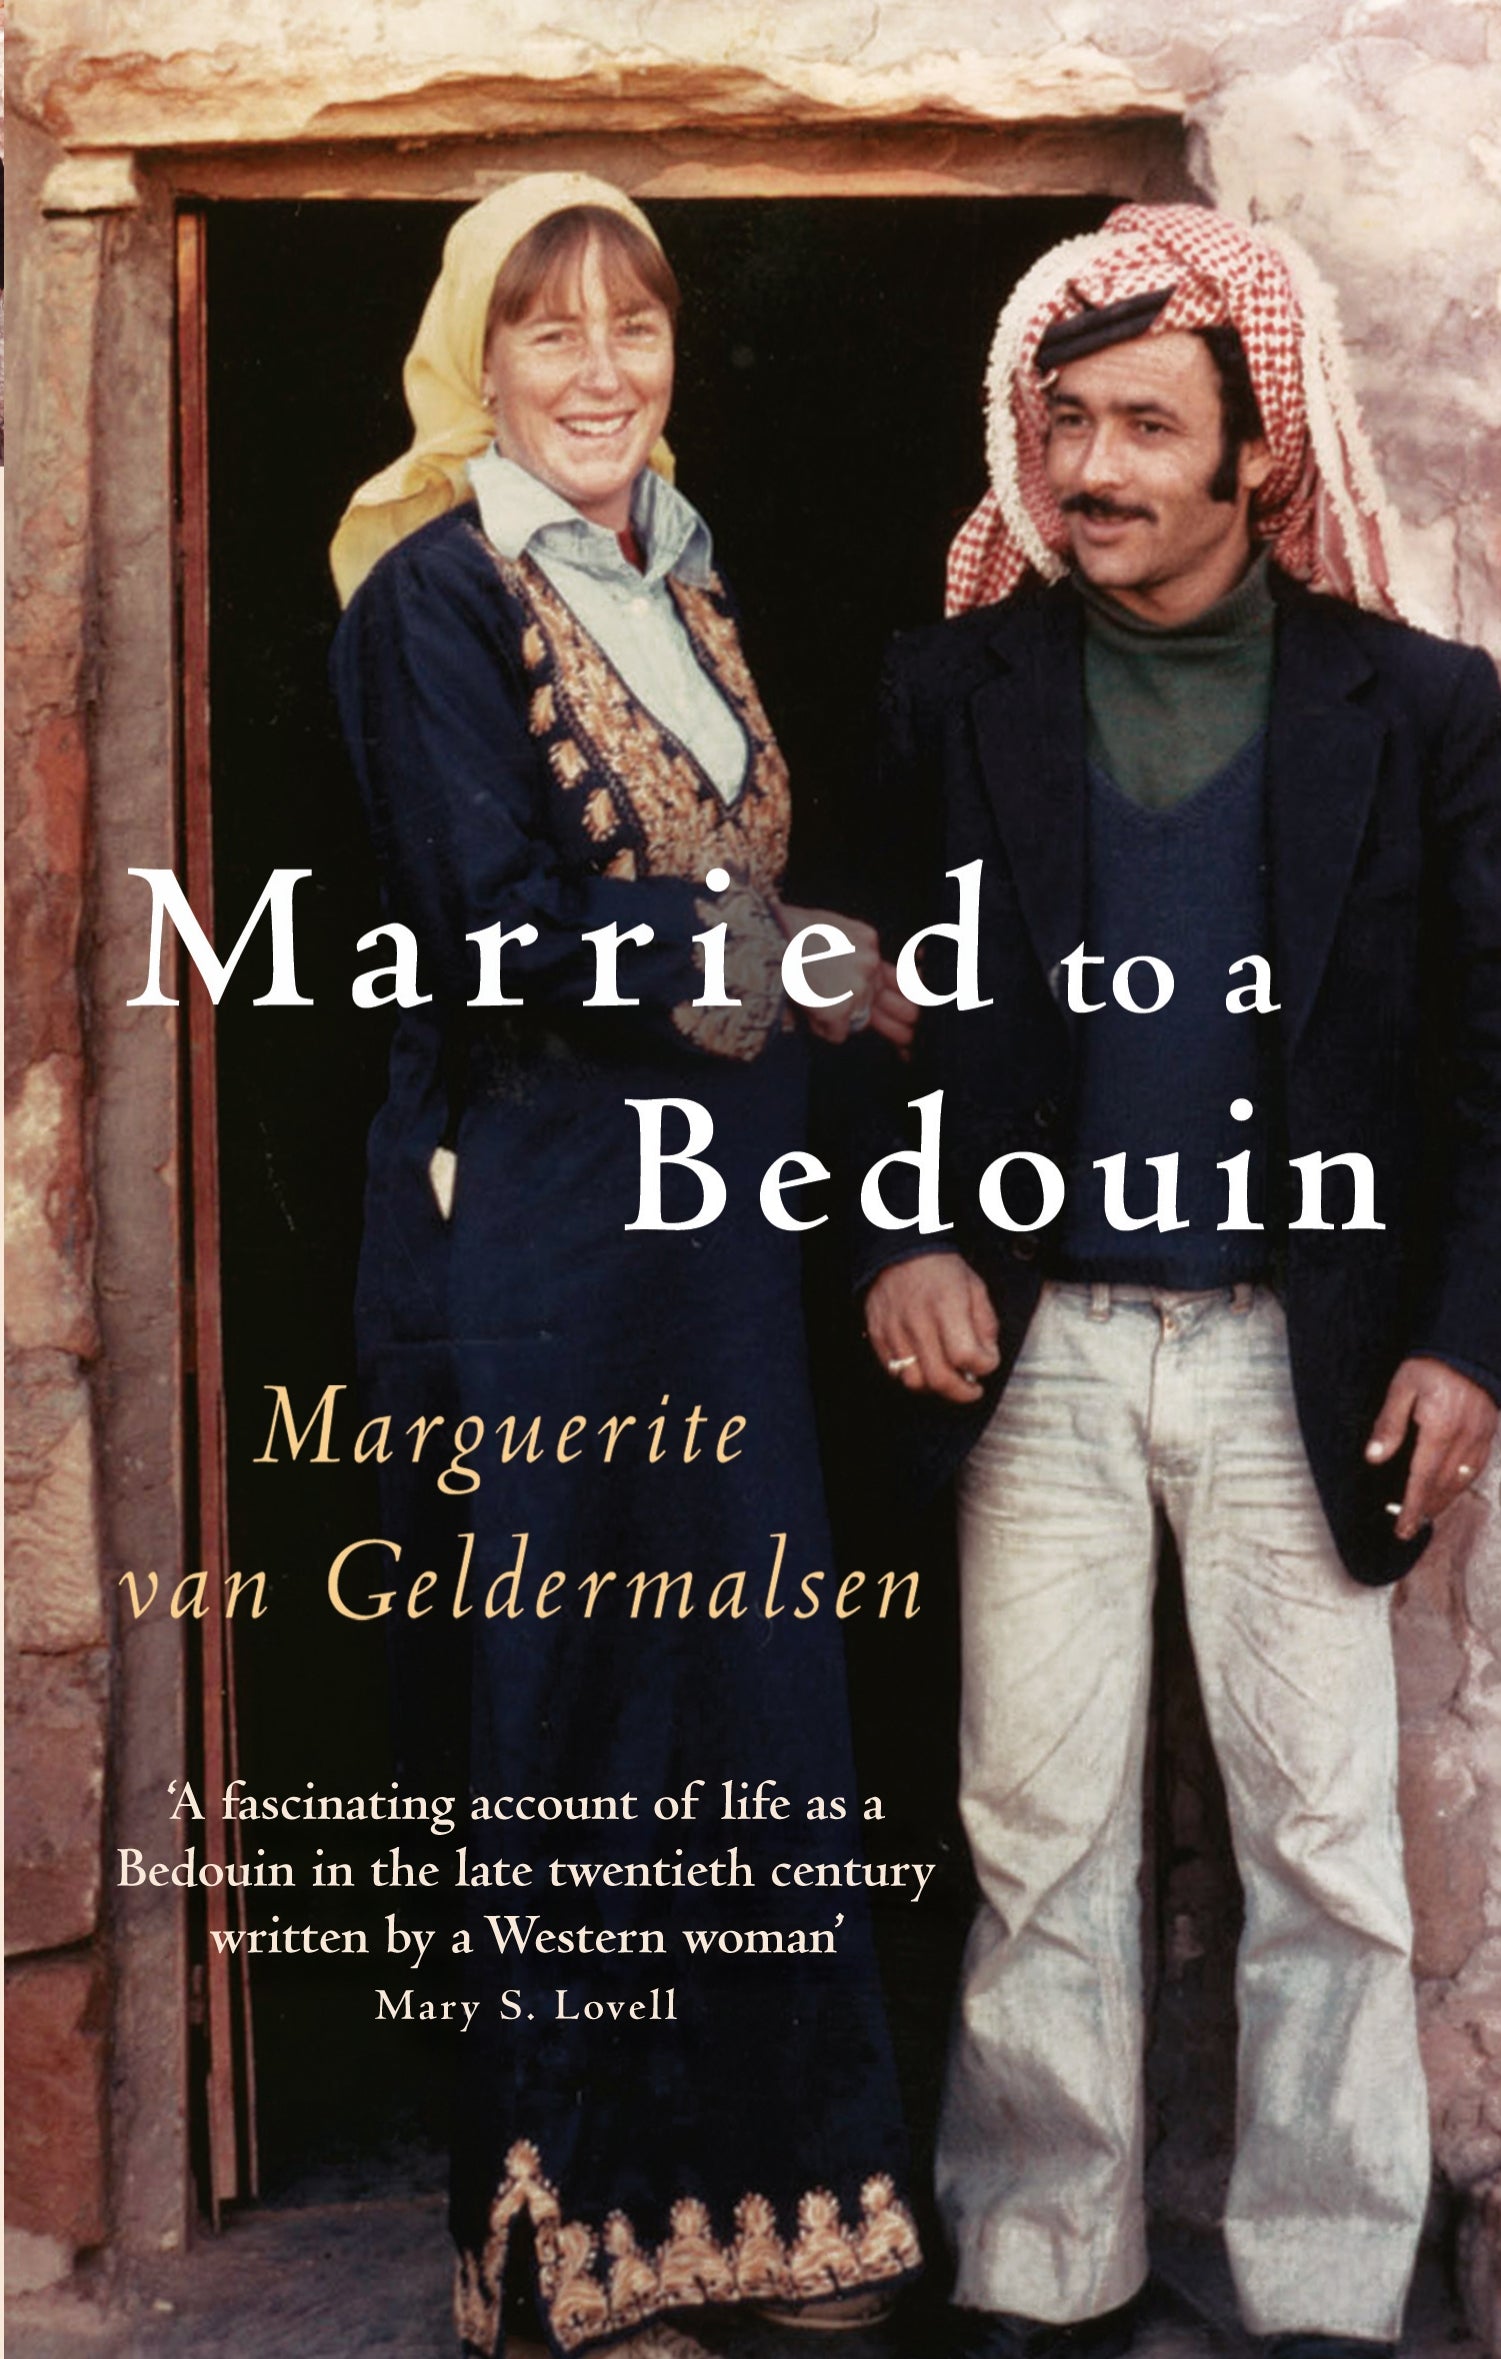 Married To A Bedouin by Marguerite van Geldermalsen